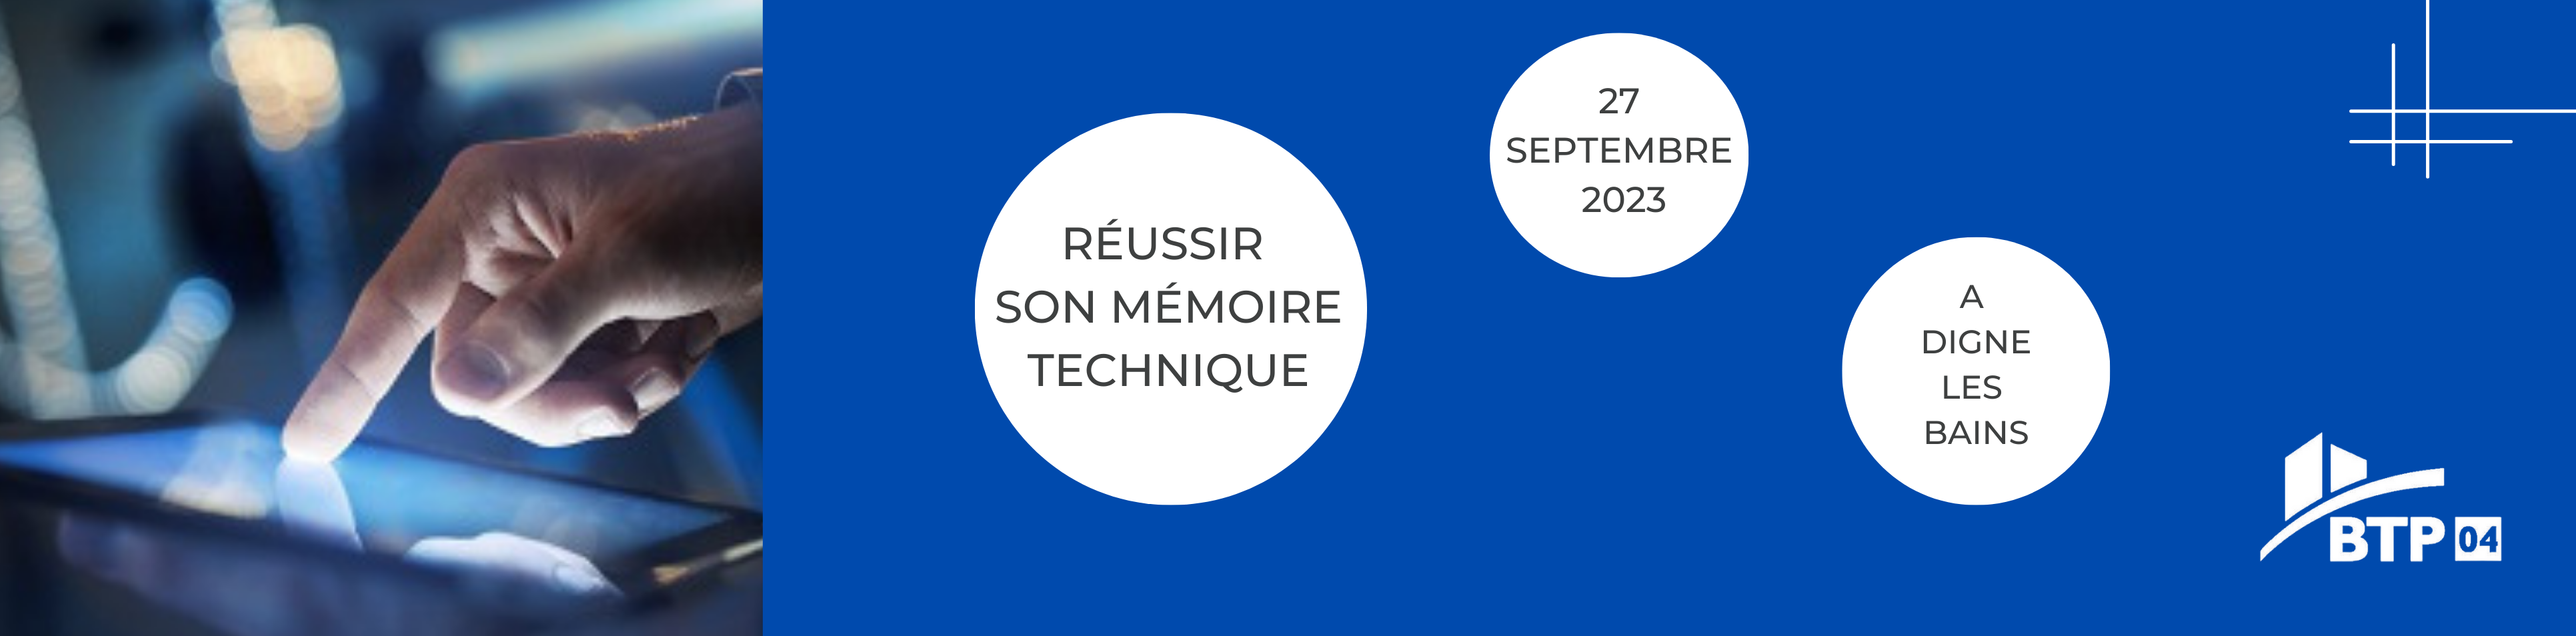 reussir-son-memoire-technique-27-09-2023